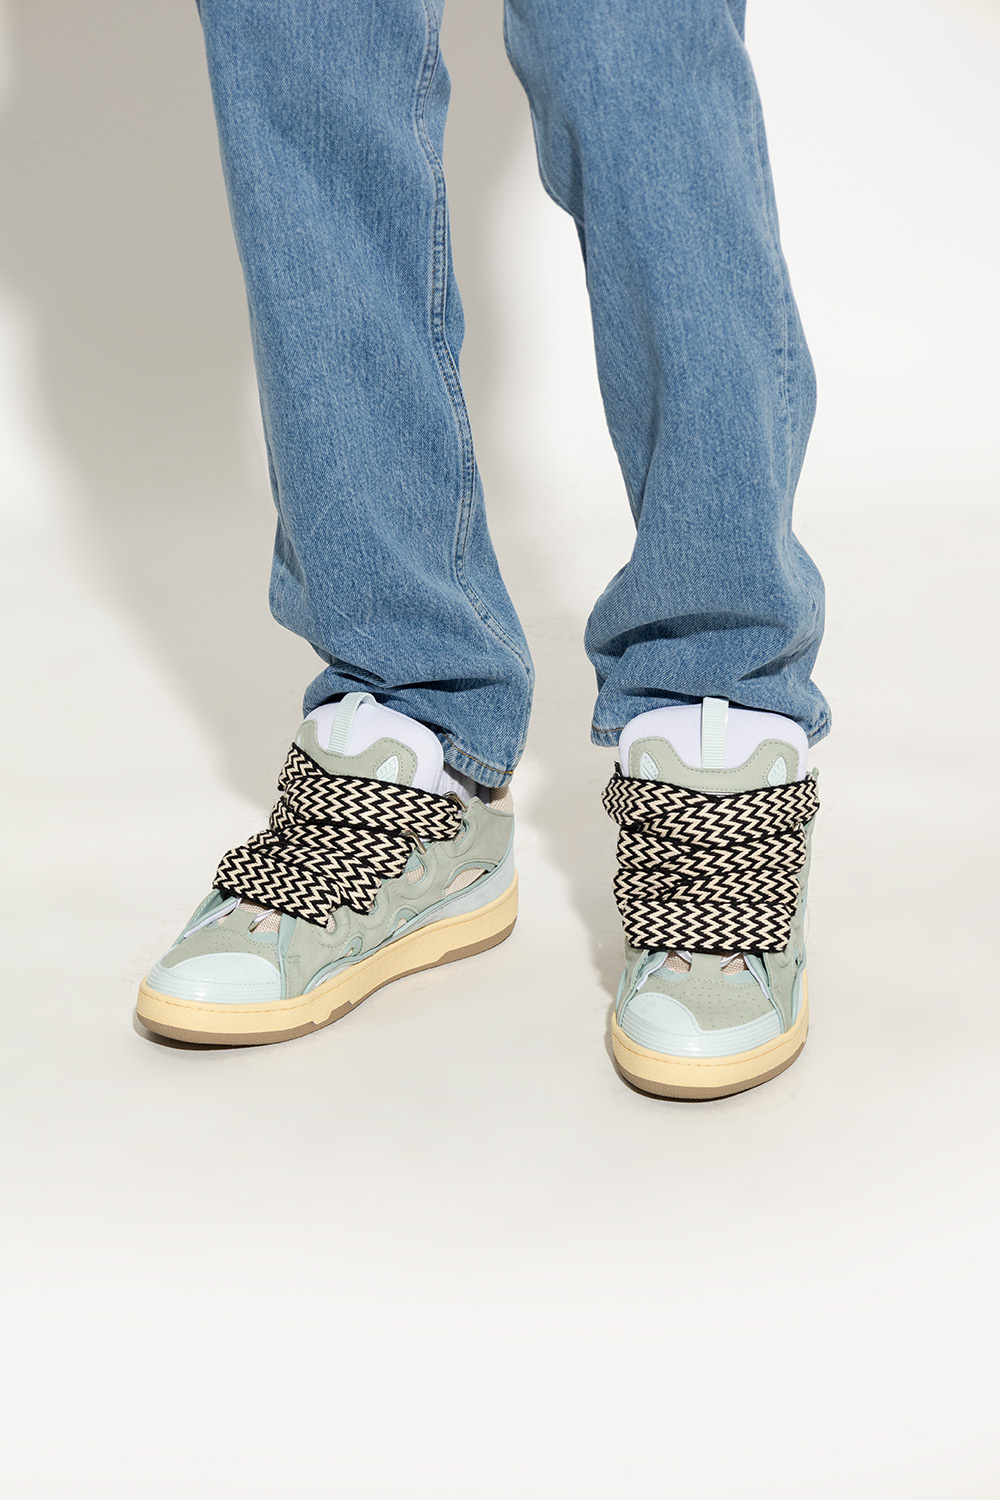 Lanvin 'Curb' | zapatillas de running Adidas hombre ritmo medio baratas menos de 60 | Men's Air | De-iceShops